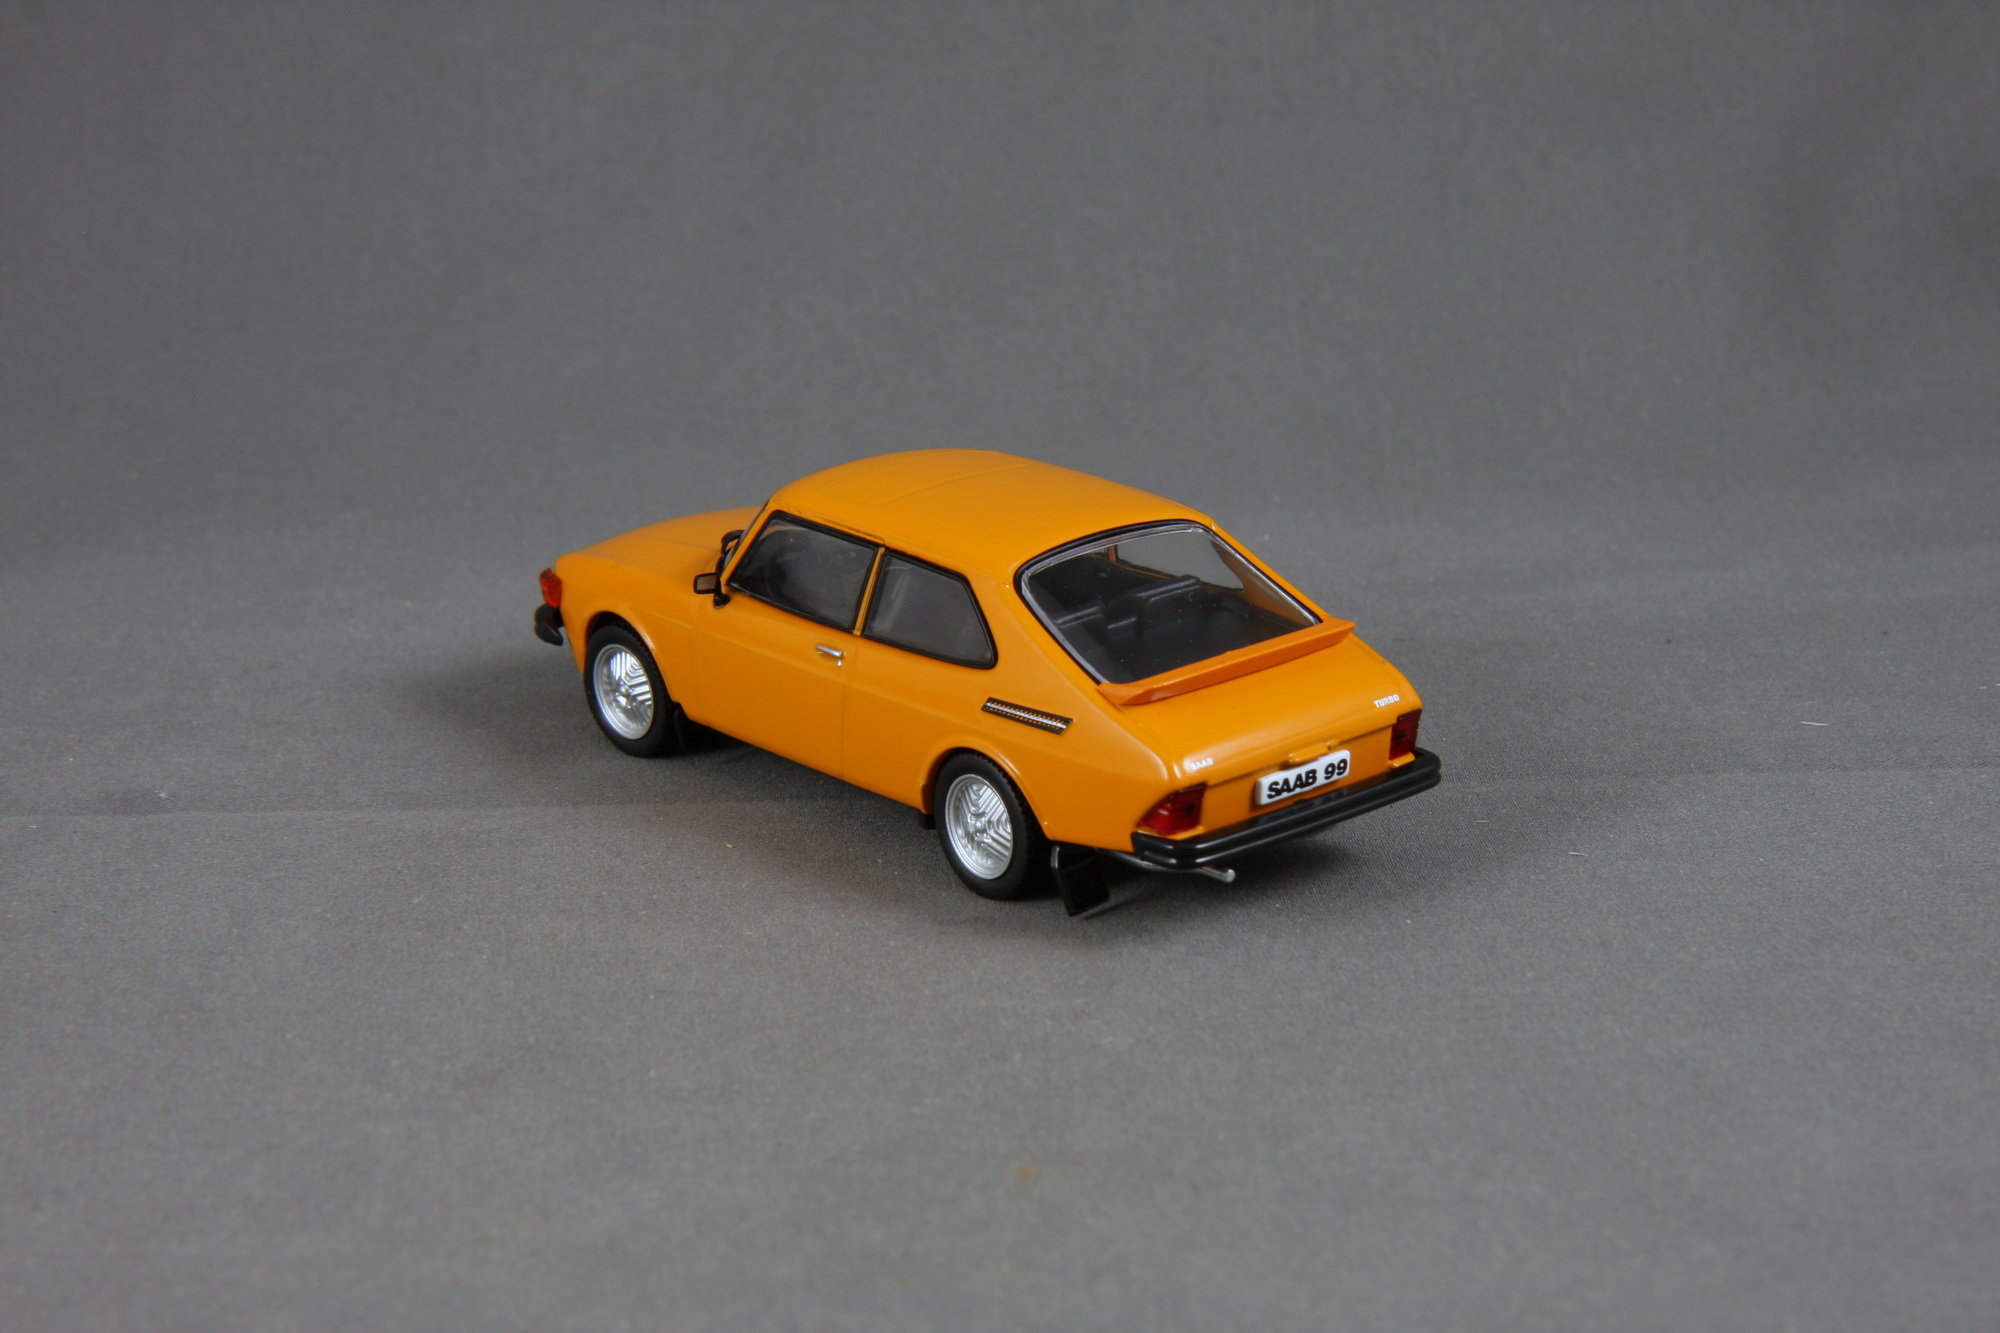 99 Turbo - 1978 3-door Bild 2